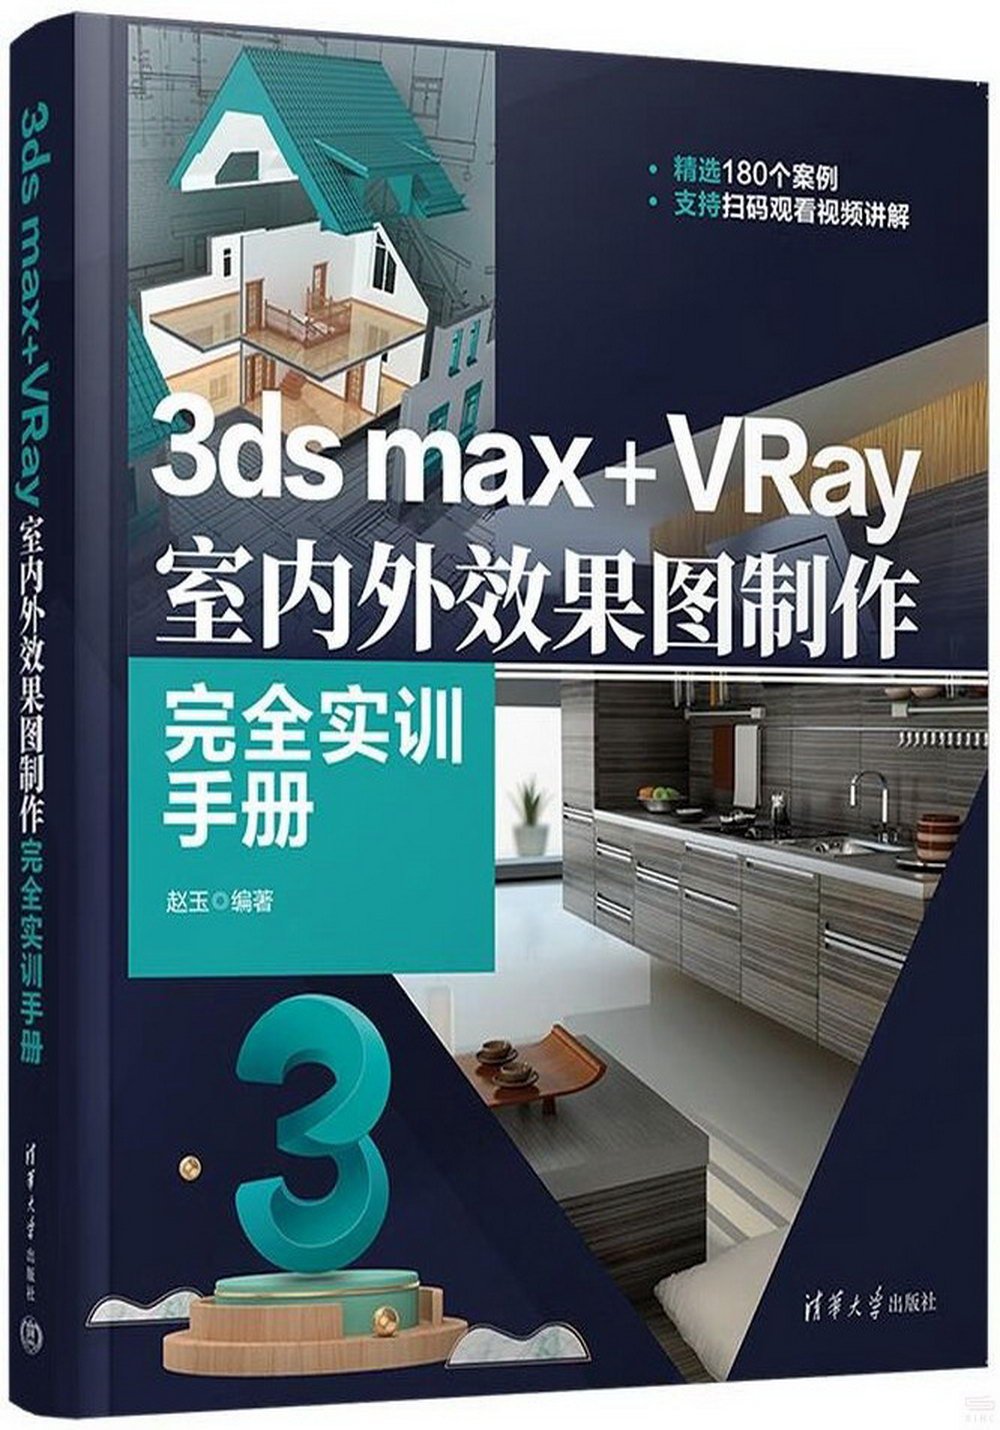 3ds max+VRay室內外效果圖製作完全實訓手冊